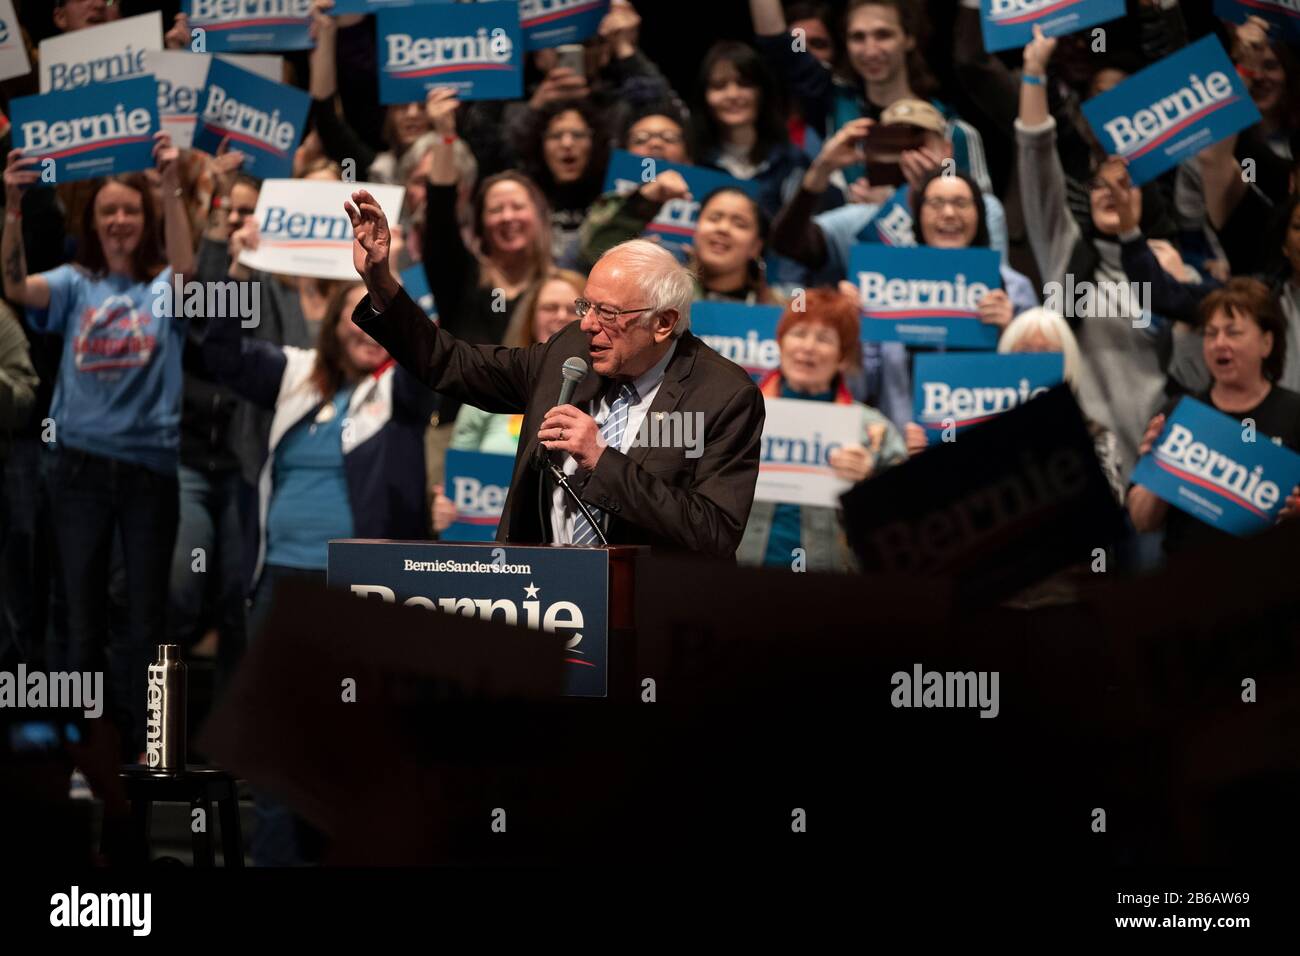 Saint Louis, MO, EE.UU. - 9 de marzo de 2020: El Senador Bernie Sanders se dirige a los partidarios del Bernie 2020 Rally en el centro de Saint Louis. Foto de stock